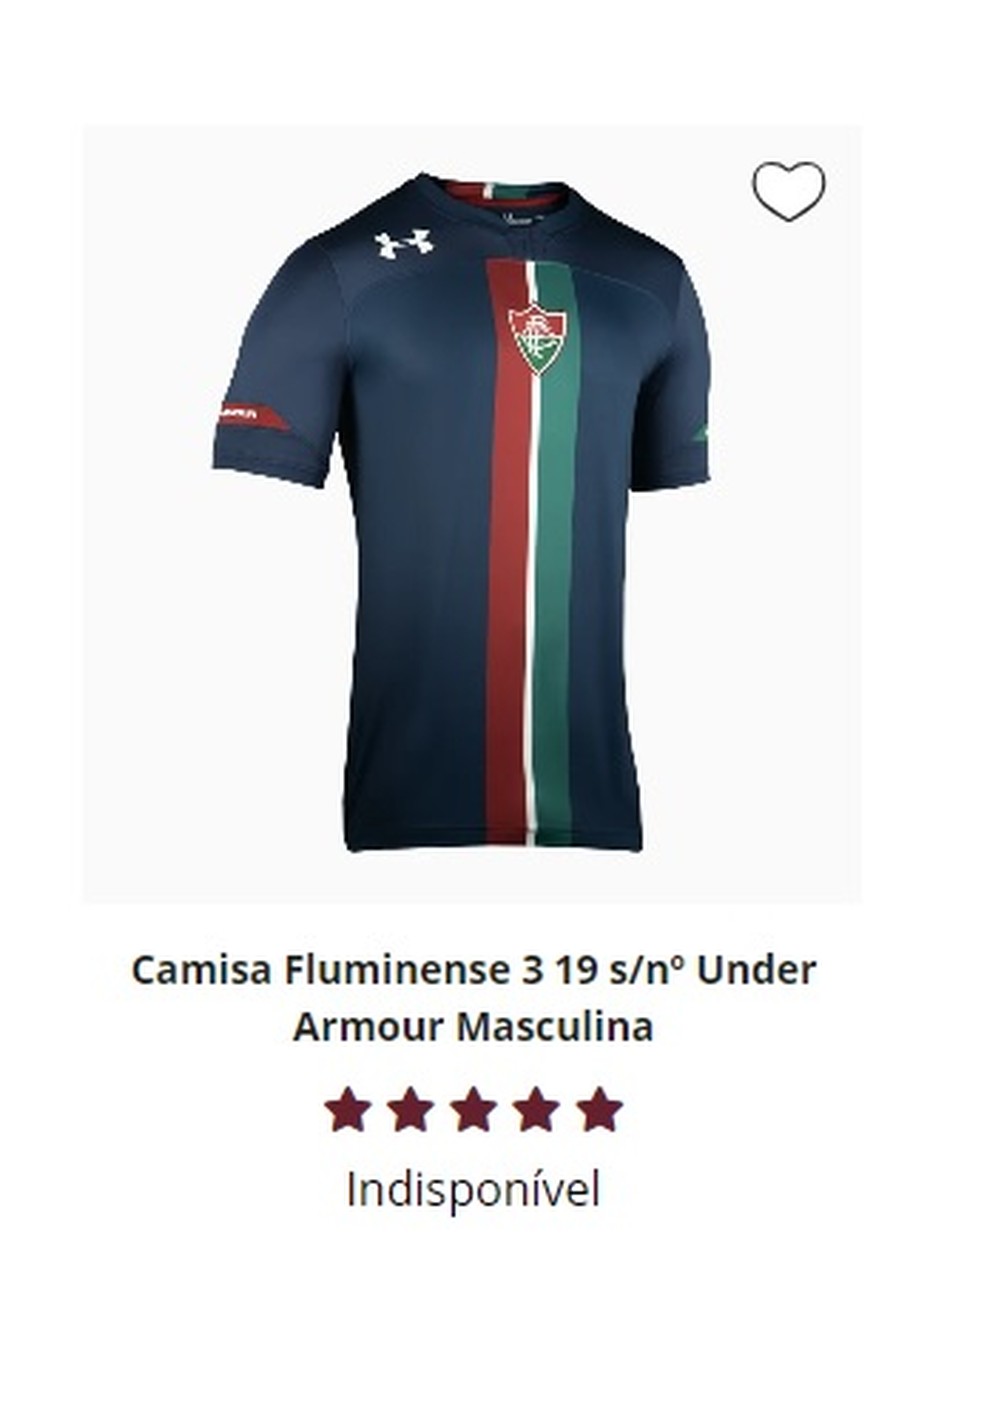 Camisa azul está indisponível no site do Fluminense — Foto: Reprodução